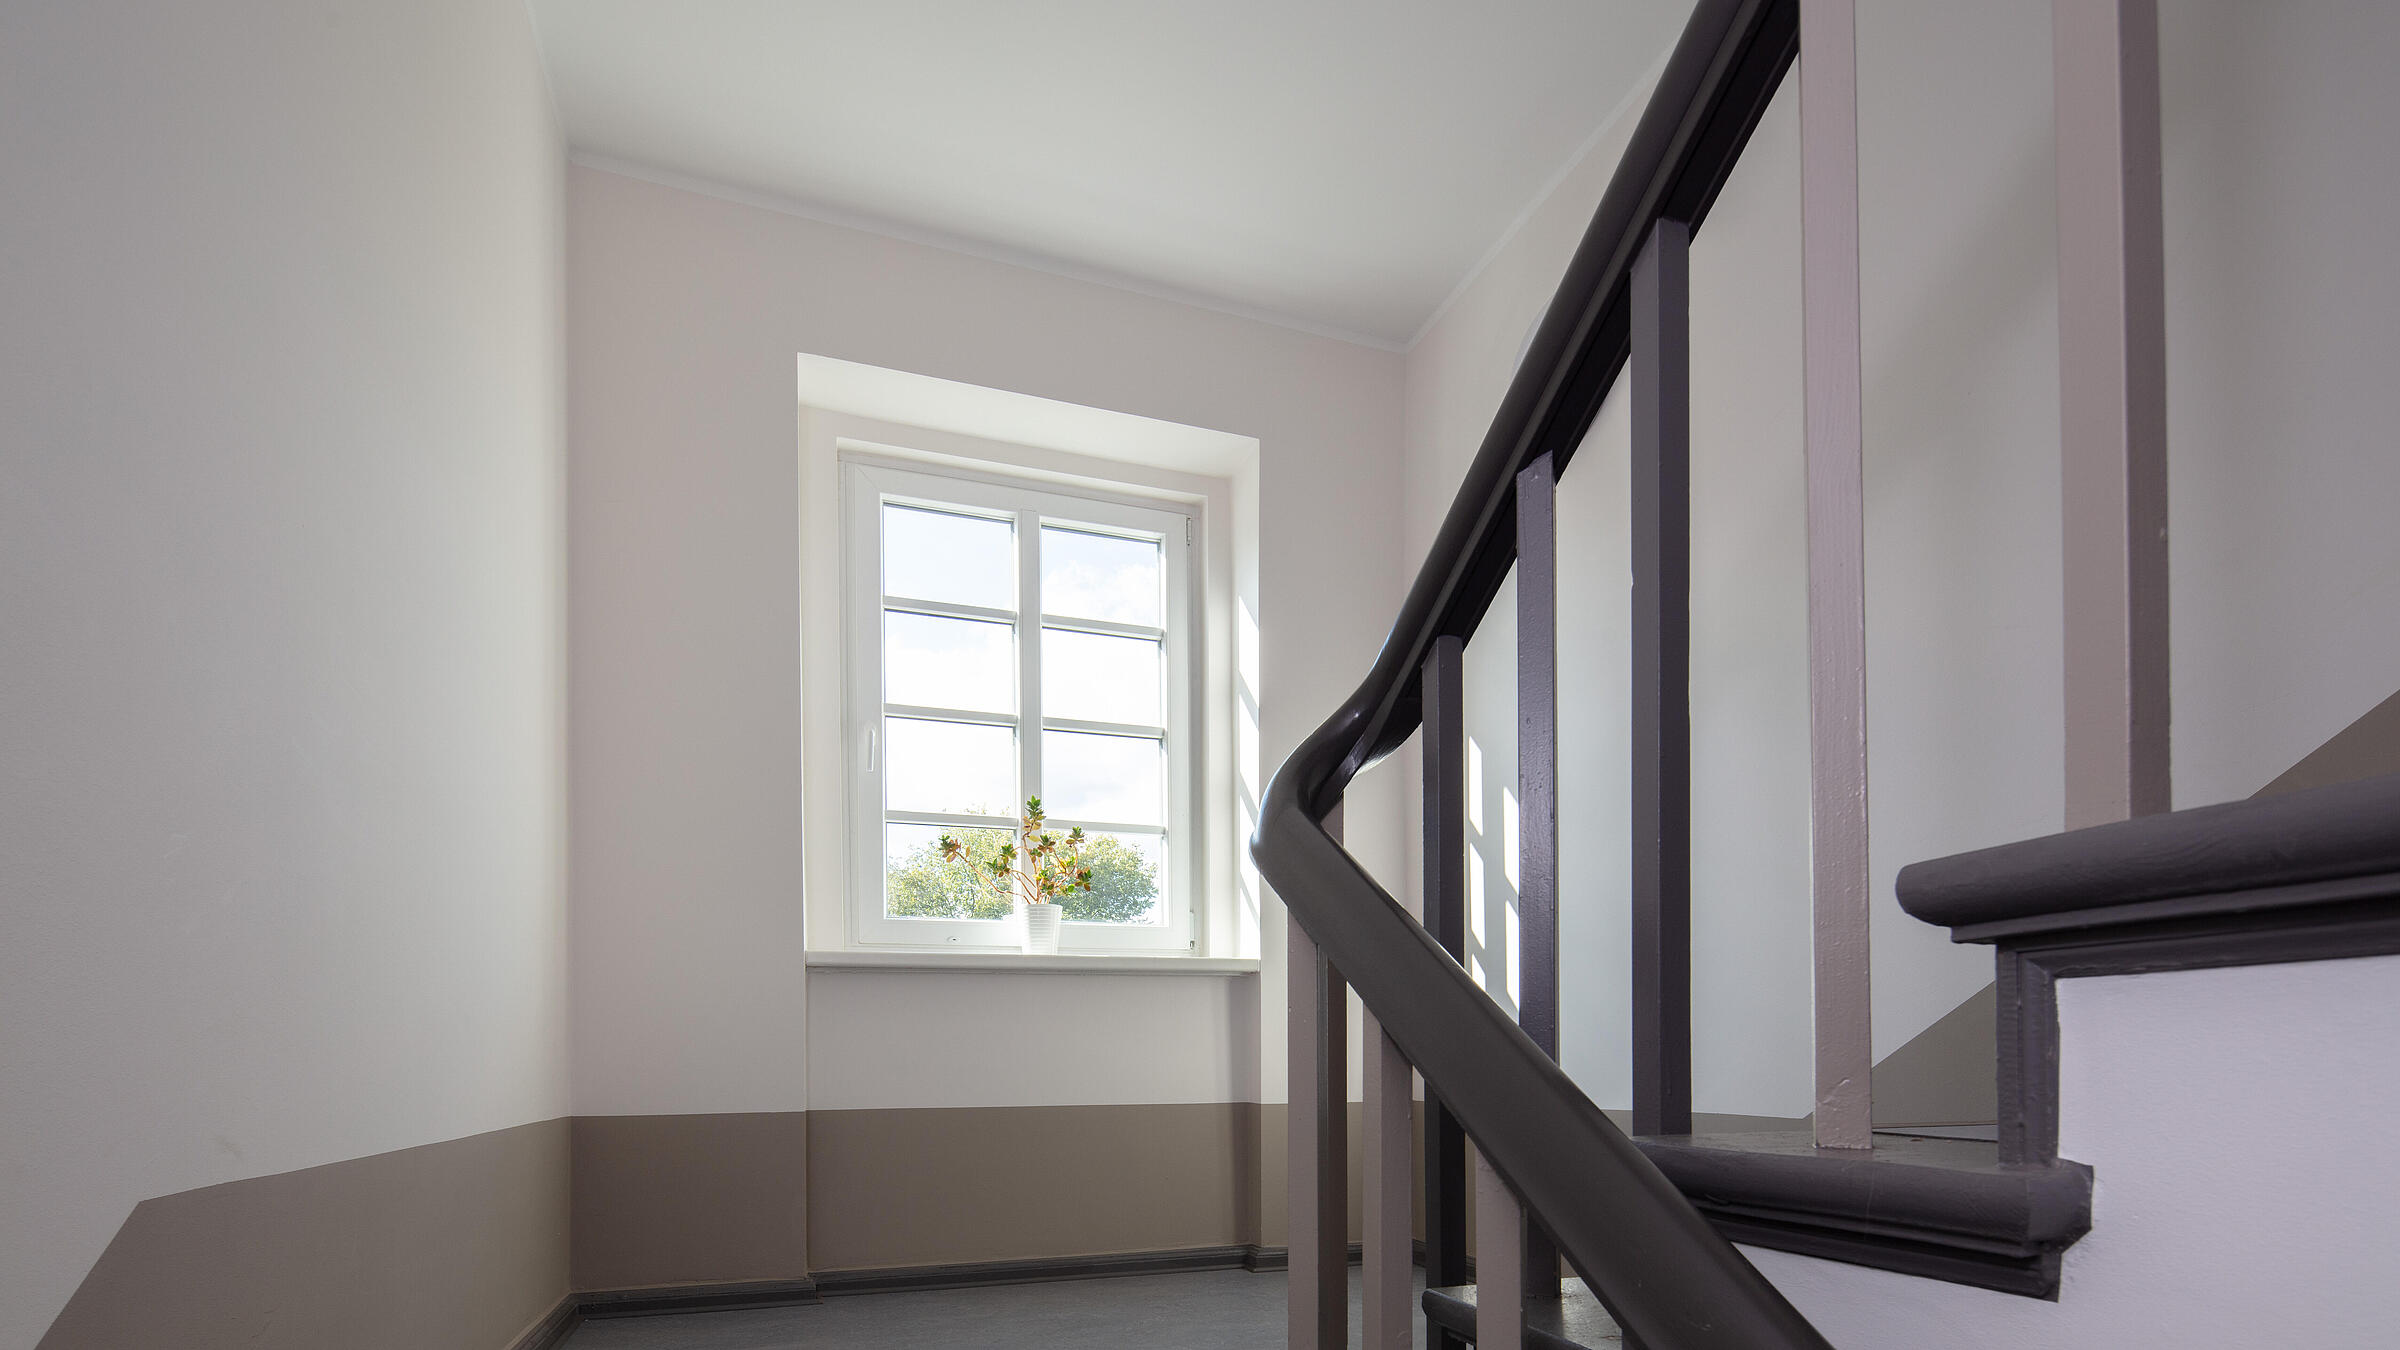 Innenaufnahme zeigt ein frisch saniertes Treppenhaus mit Fenster, rechter Hand der hölzerne Treppenlauf, links das kleine Fenster.